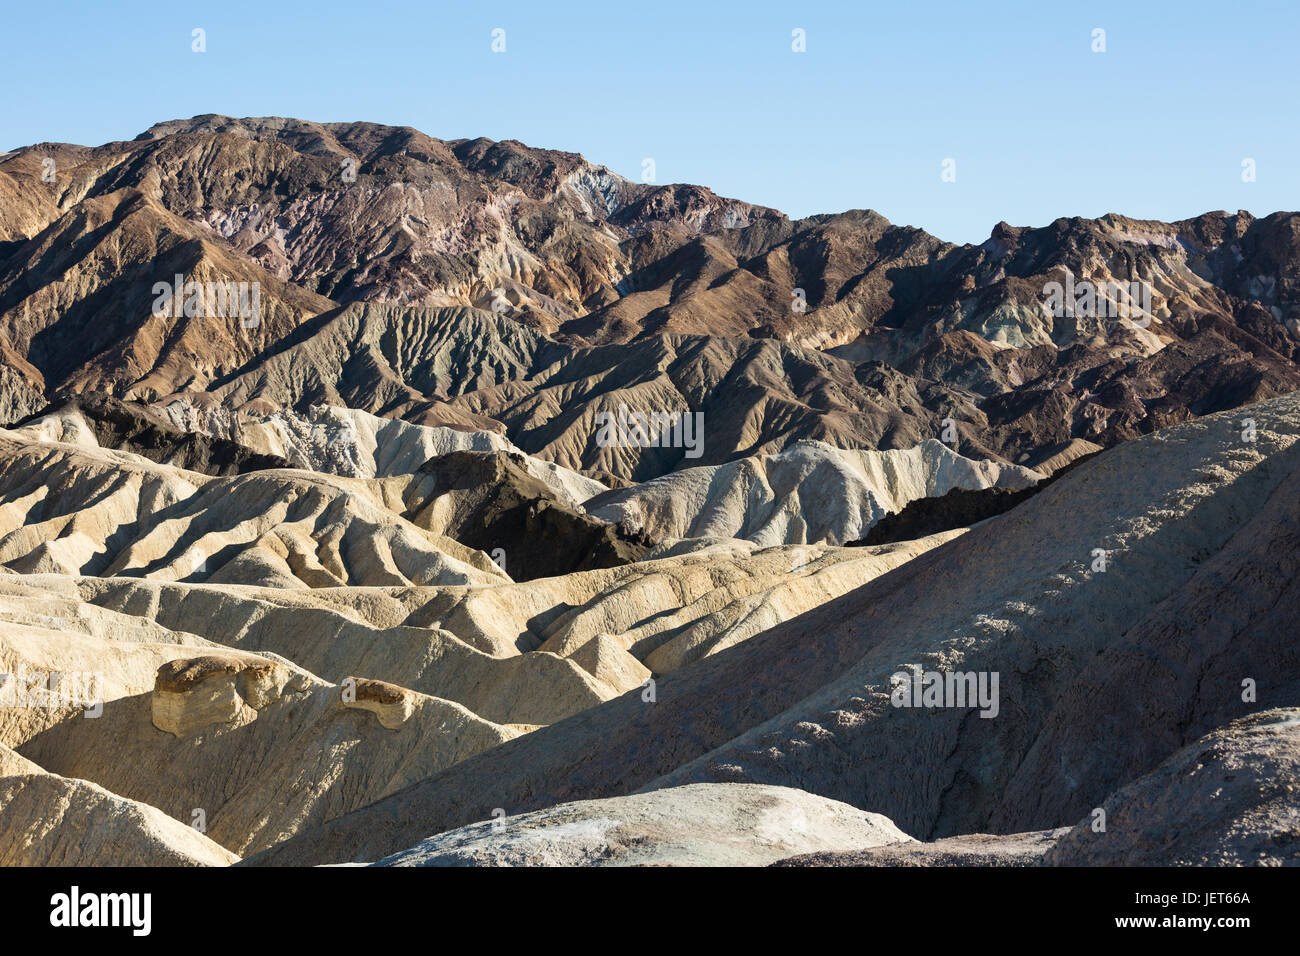 USA, Kalifornien, Death Valley ist ein Wüstental im Osten Kaliforniens. Es ist die niedrigste, trockenste und heißeste Gegend in Nordamerika. Zabriskie Point. Stockfoto